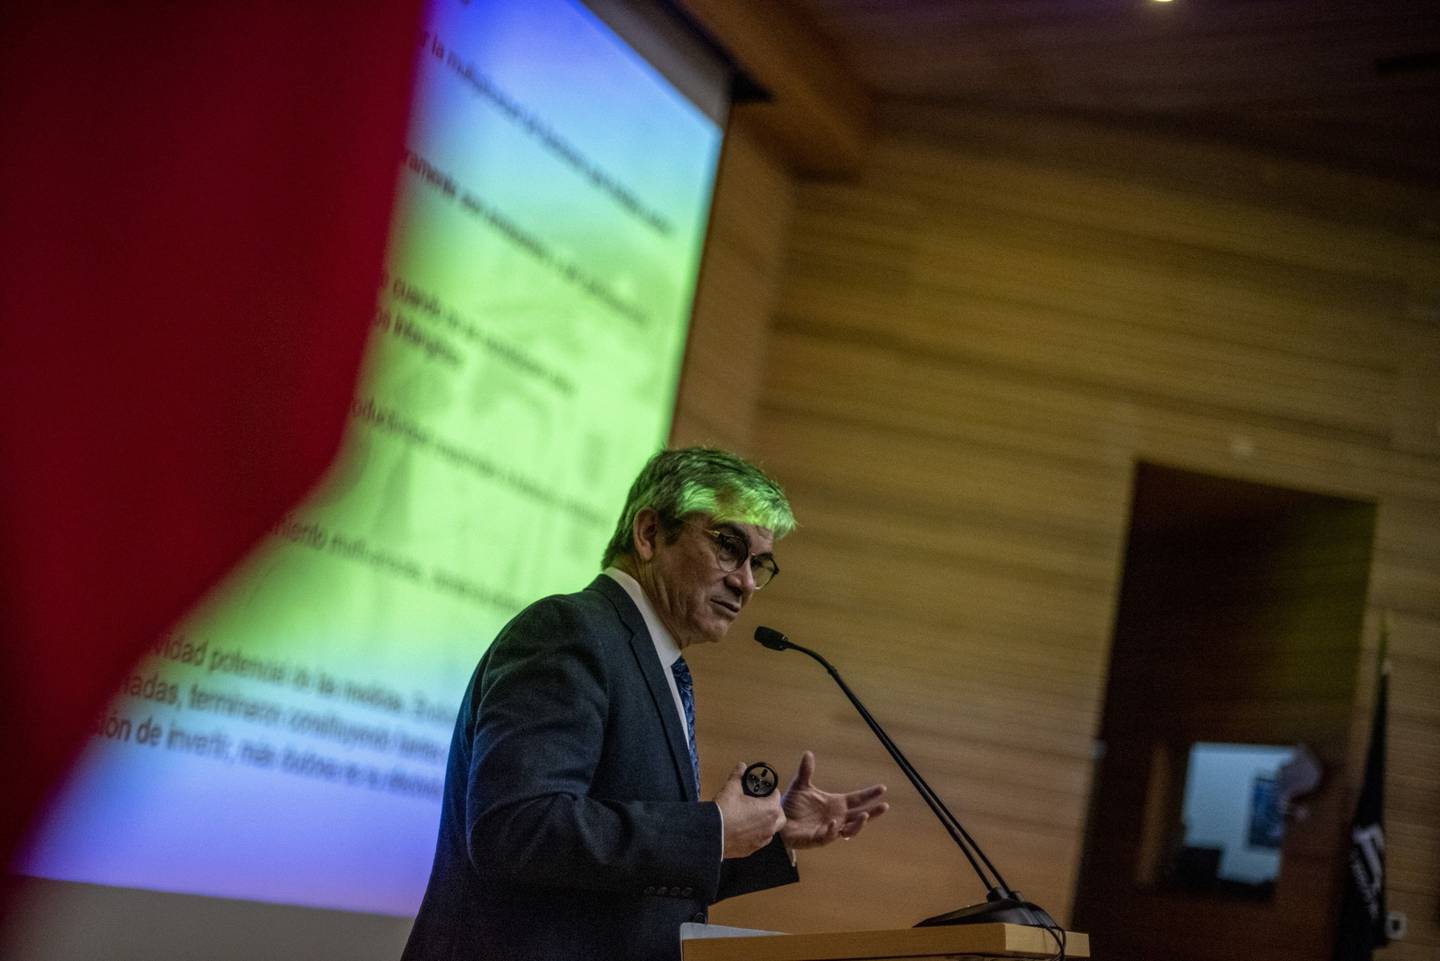 Mario Marcel, ministro de Hacienda de Chile, habla durante un evento en la Universidad Adolfo Ibañez en Santiago de Chile, el viernes 19 de agosto de 2022. Fotógrafo: Cristobal Olivares/Bloomberg